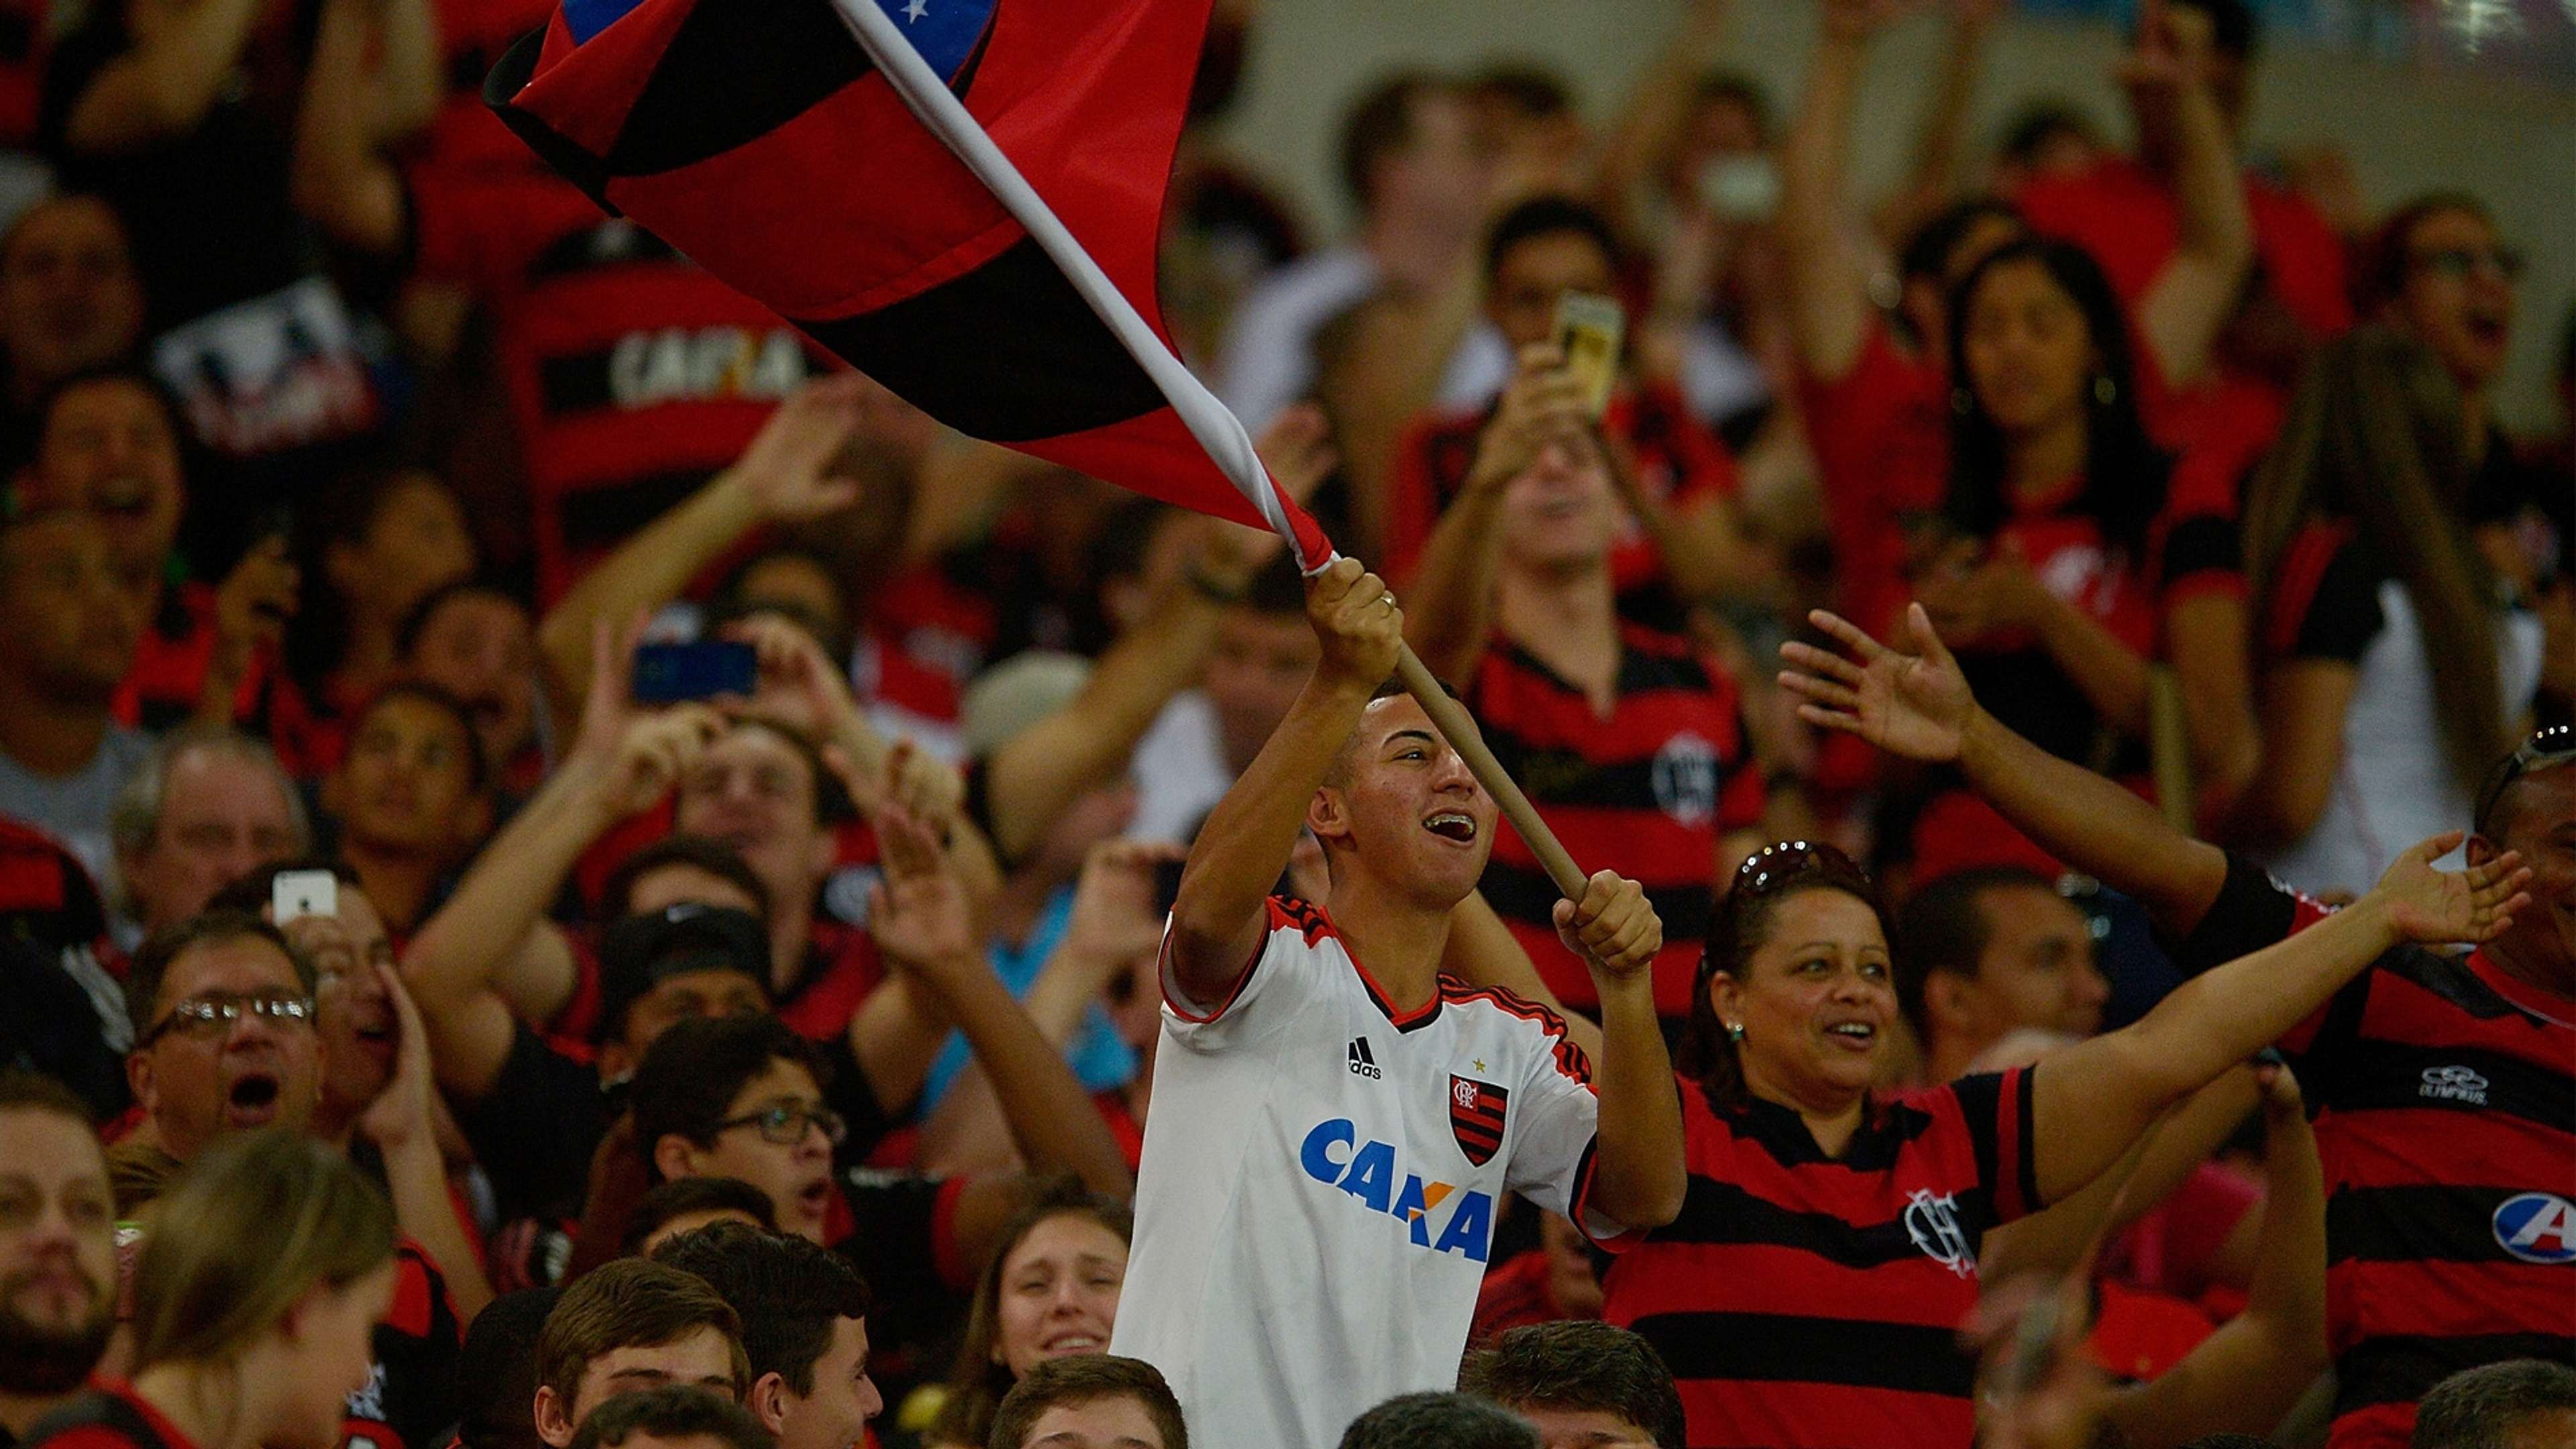 Torcida Flamengo x Grêmio 18 07 15